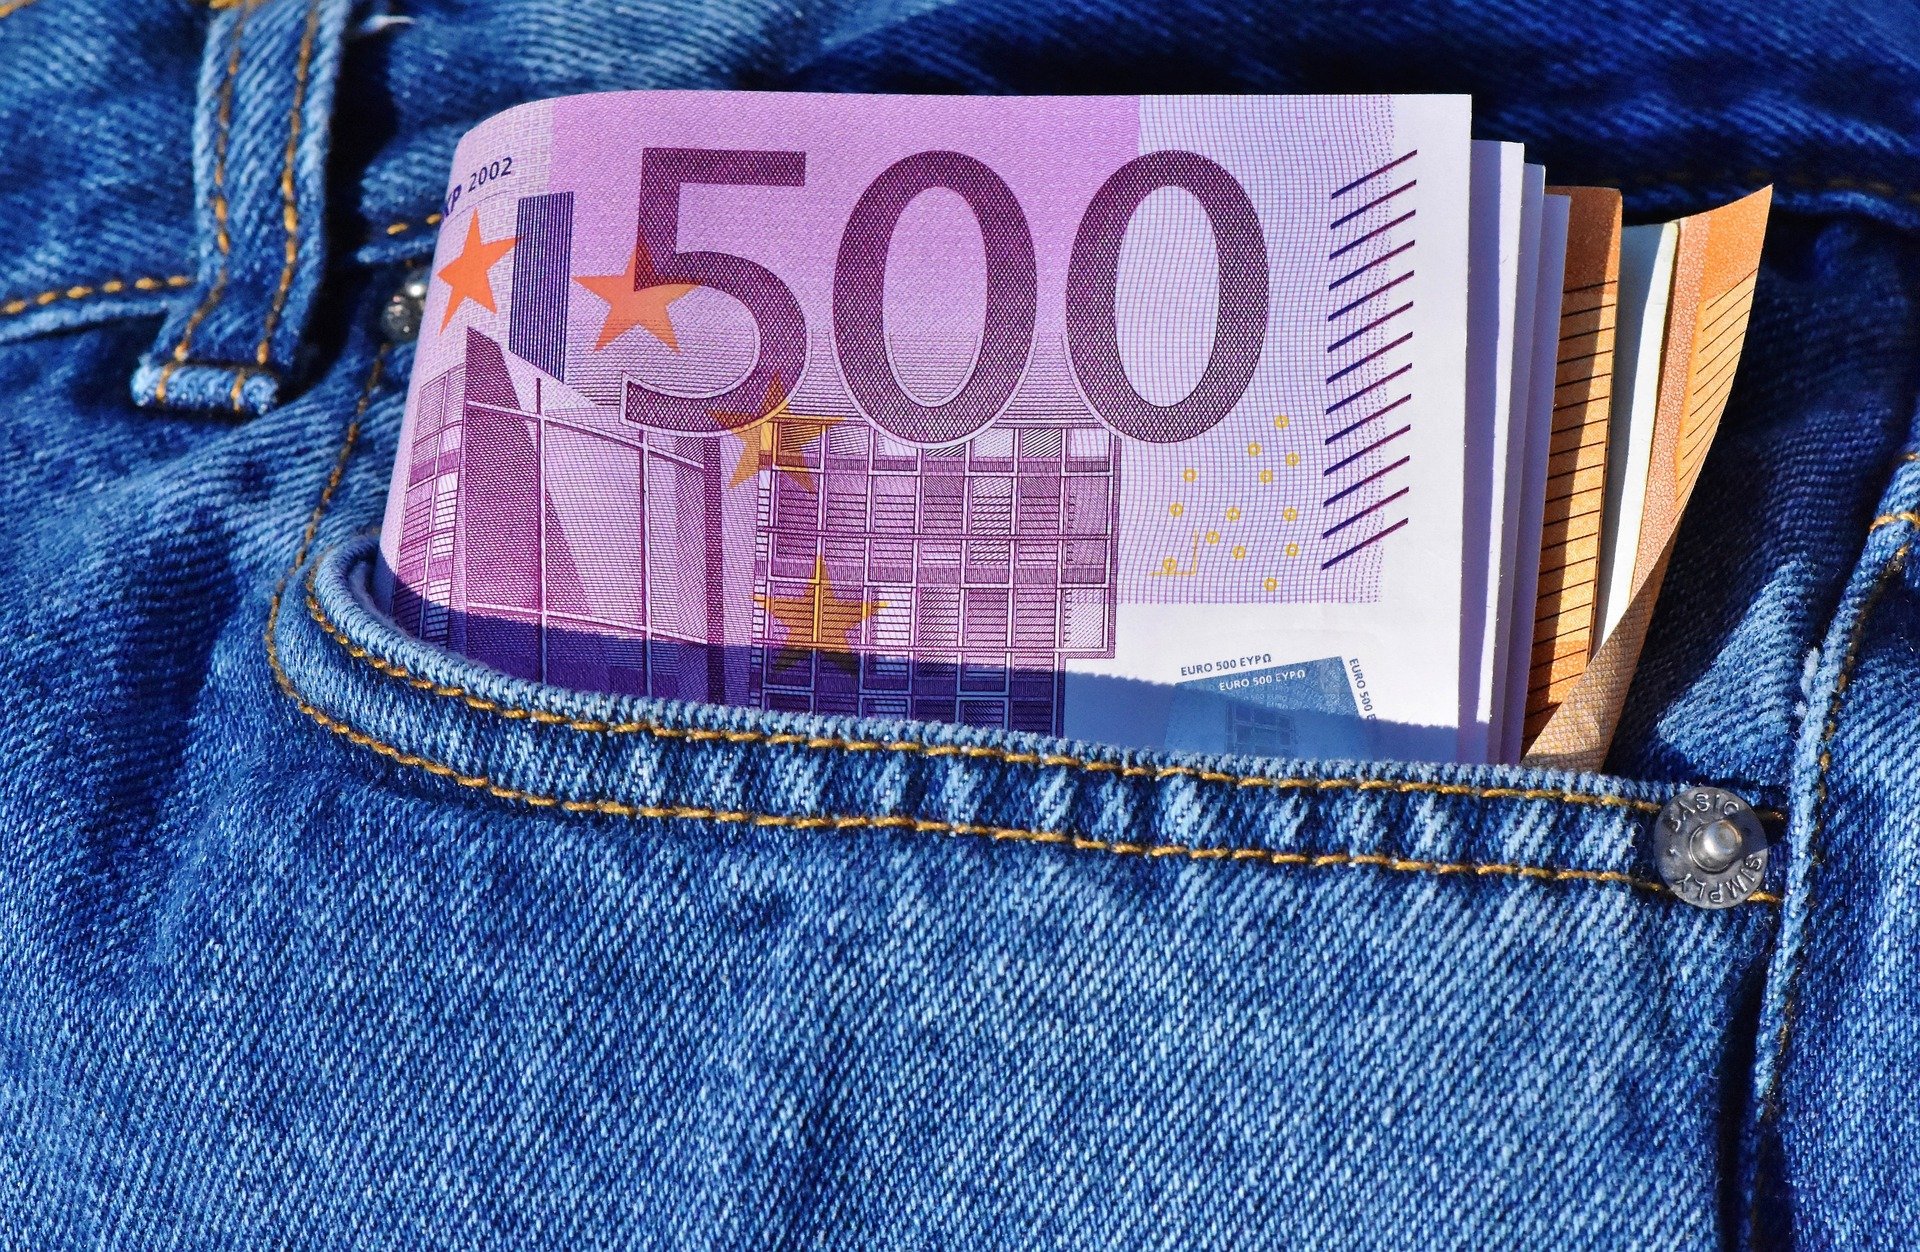 El Banc d'Espanya deixa de fabricar bitllets de 500 euros